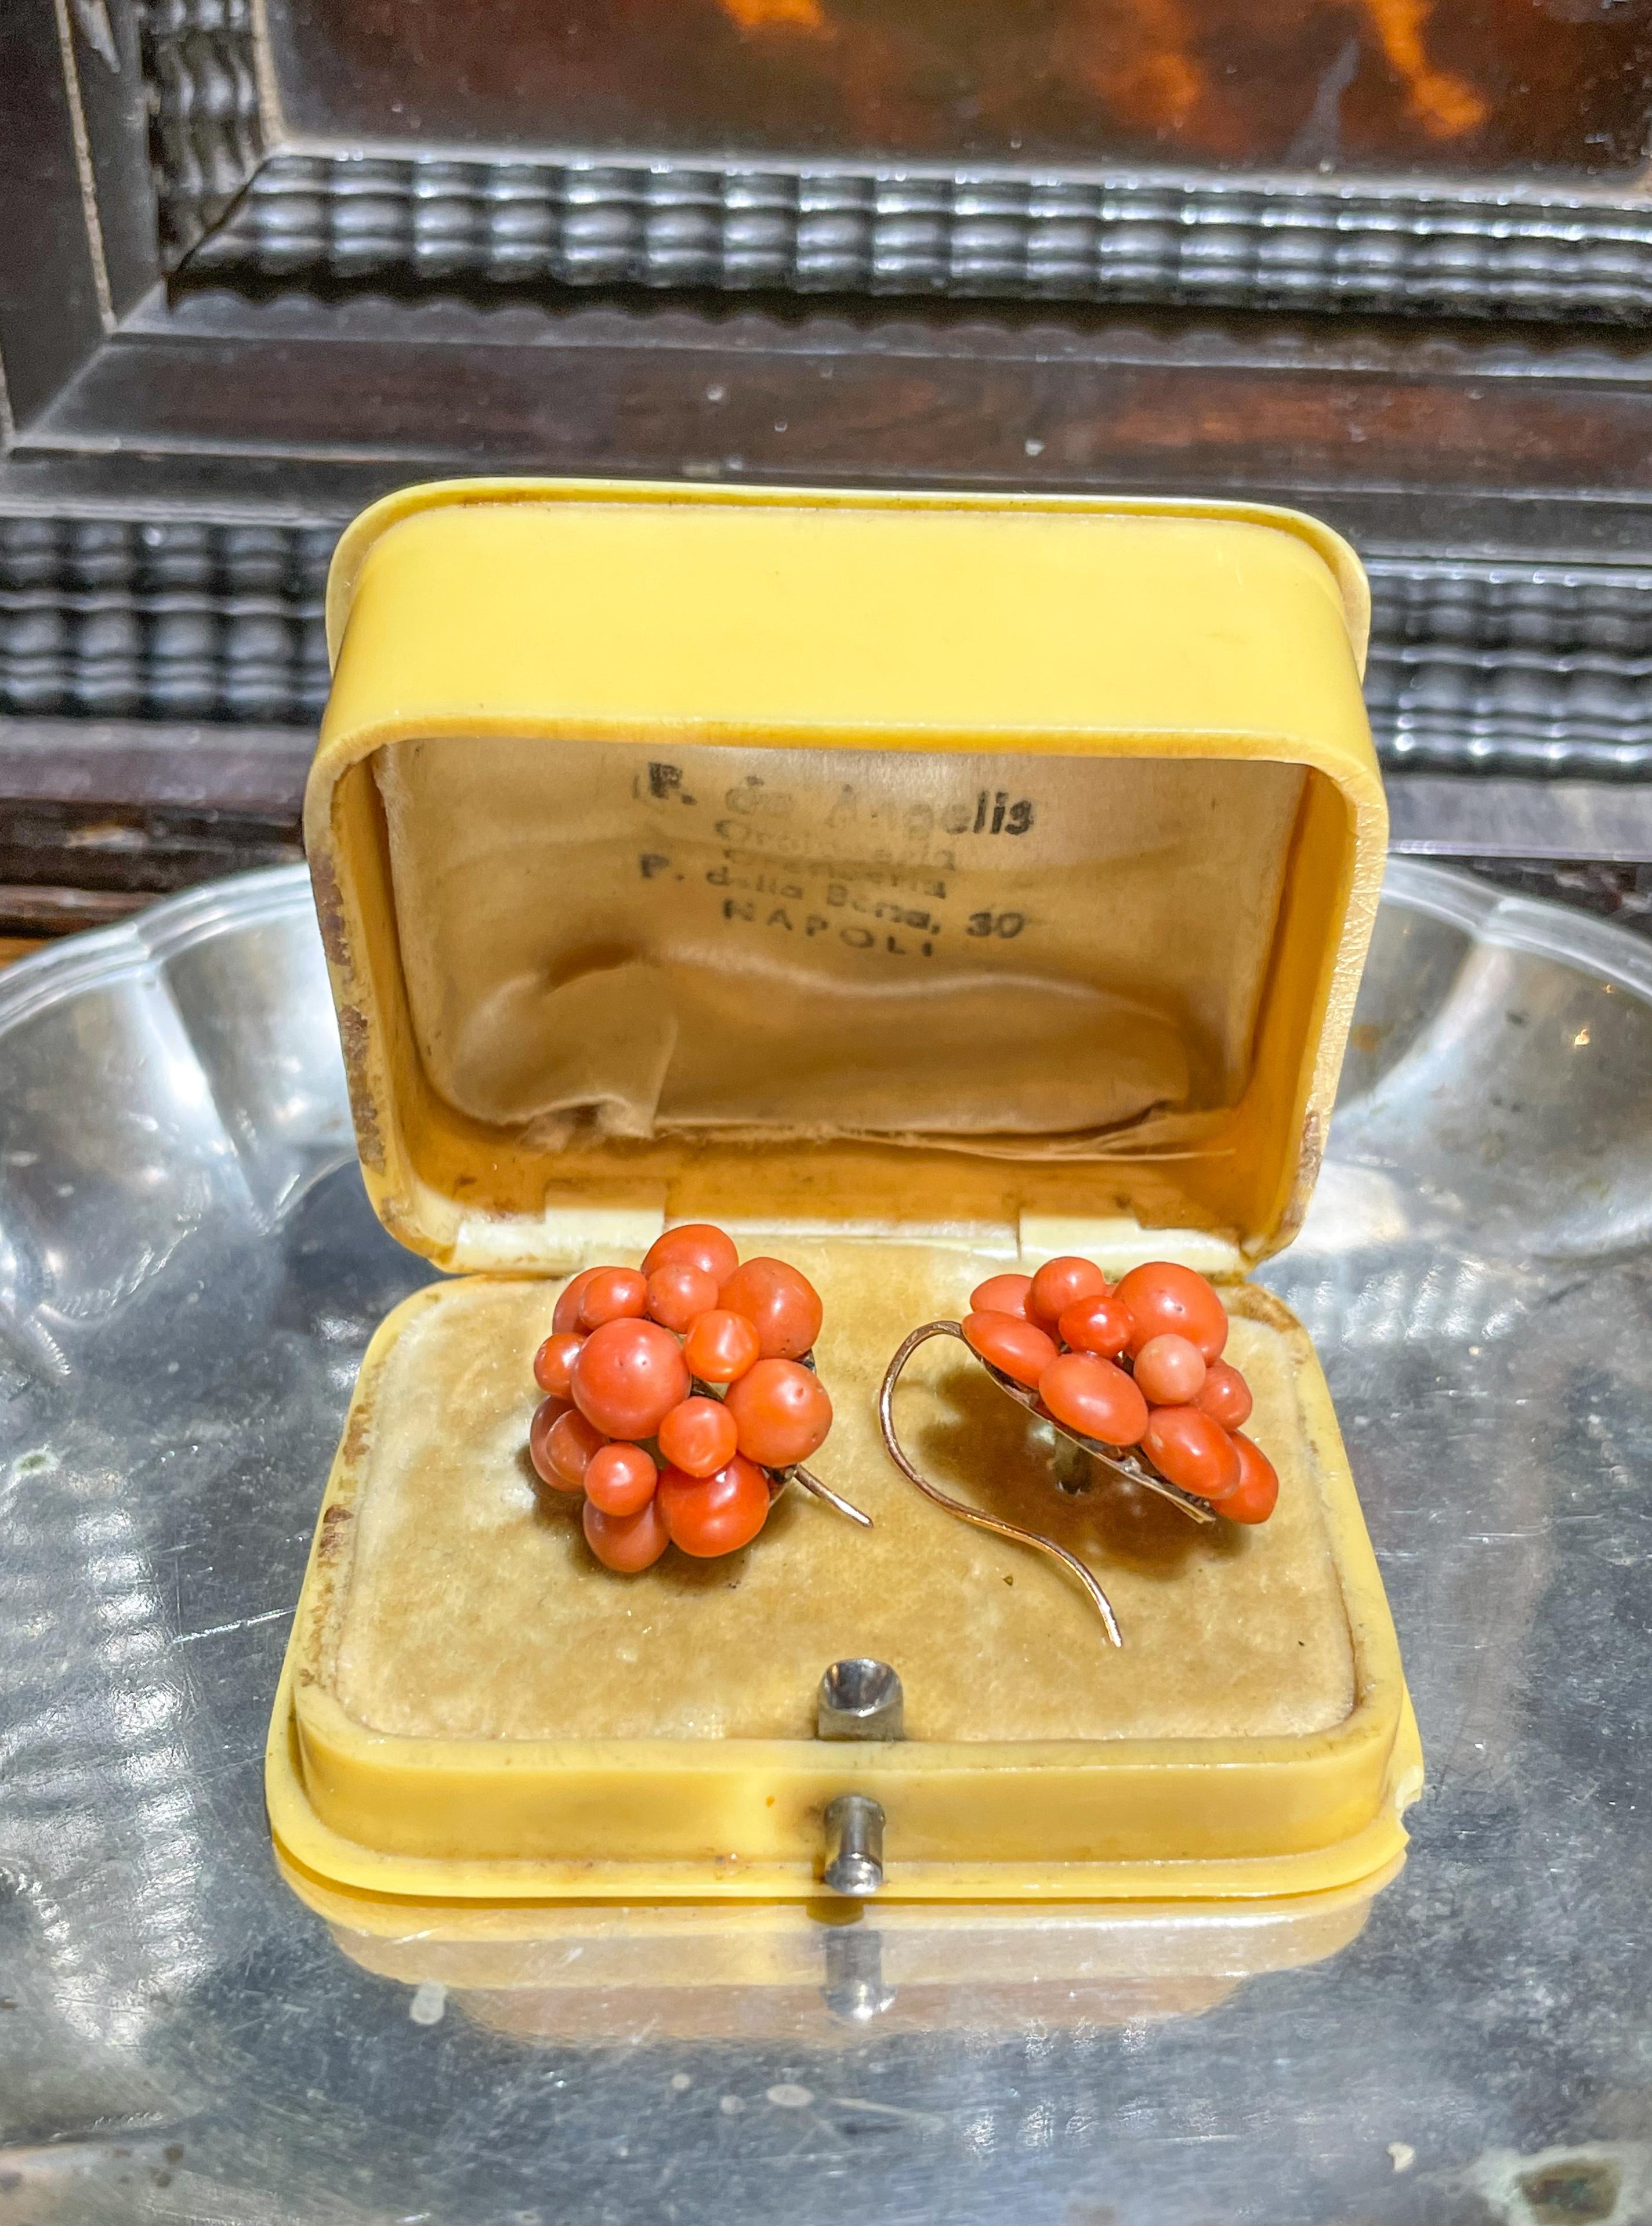 Italienische Korallenohrringe aus dem 19. Jahrhundert.u2028
Gold mit französischen Punzen (Adlerkopf=750 Gold).u2028
Neunzehntes Jahrhundert.
Höhe 2,1 cmu2028
Länge 2.1cm
Ohrringe in gutem Zustand.u2028

Sie wurden von unserem Goldschmied des